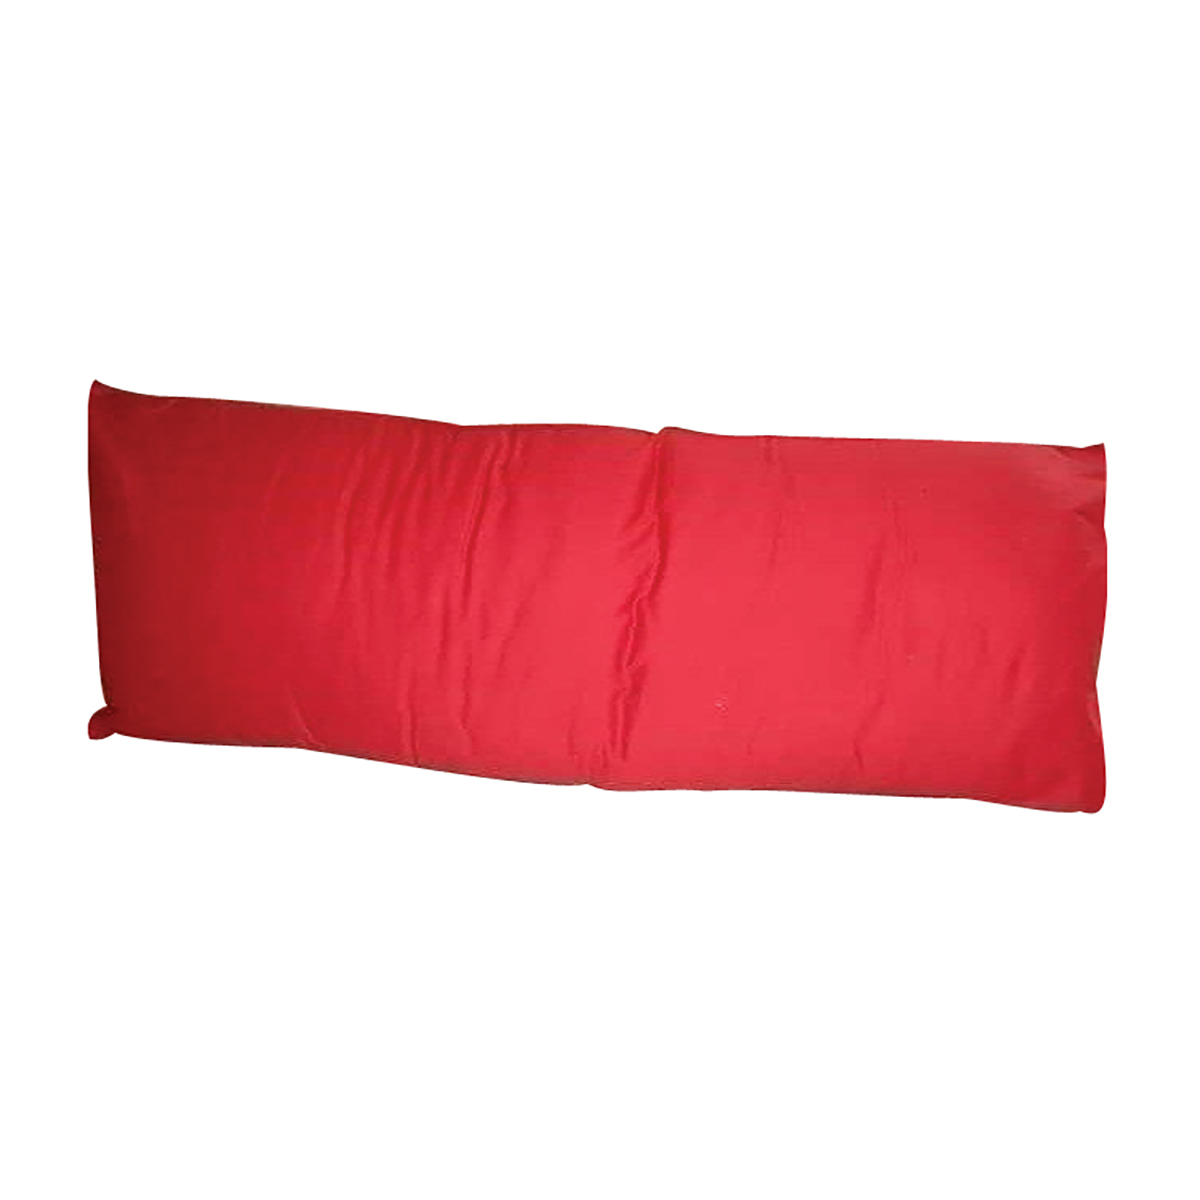 20X54 Asst Color Body Pillows